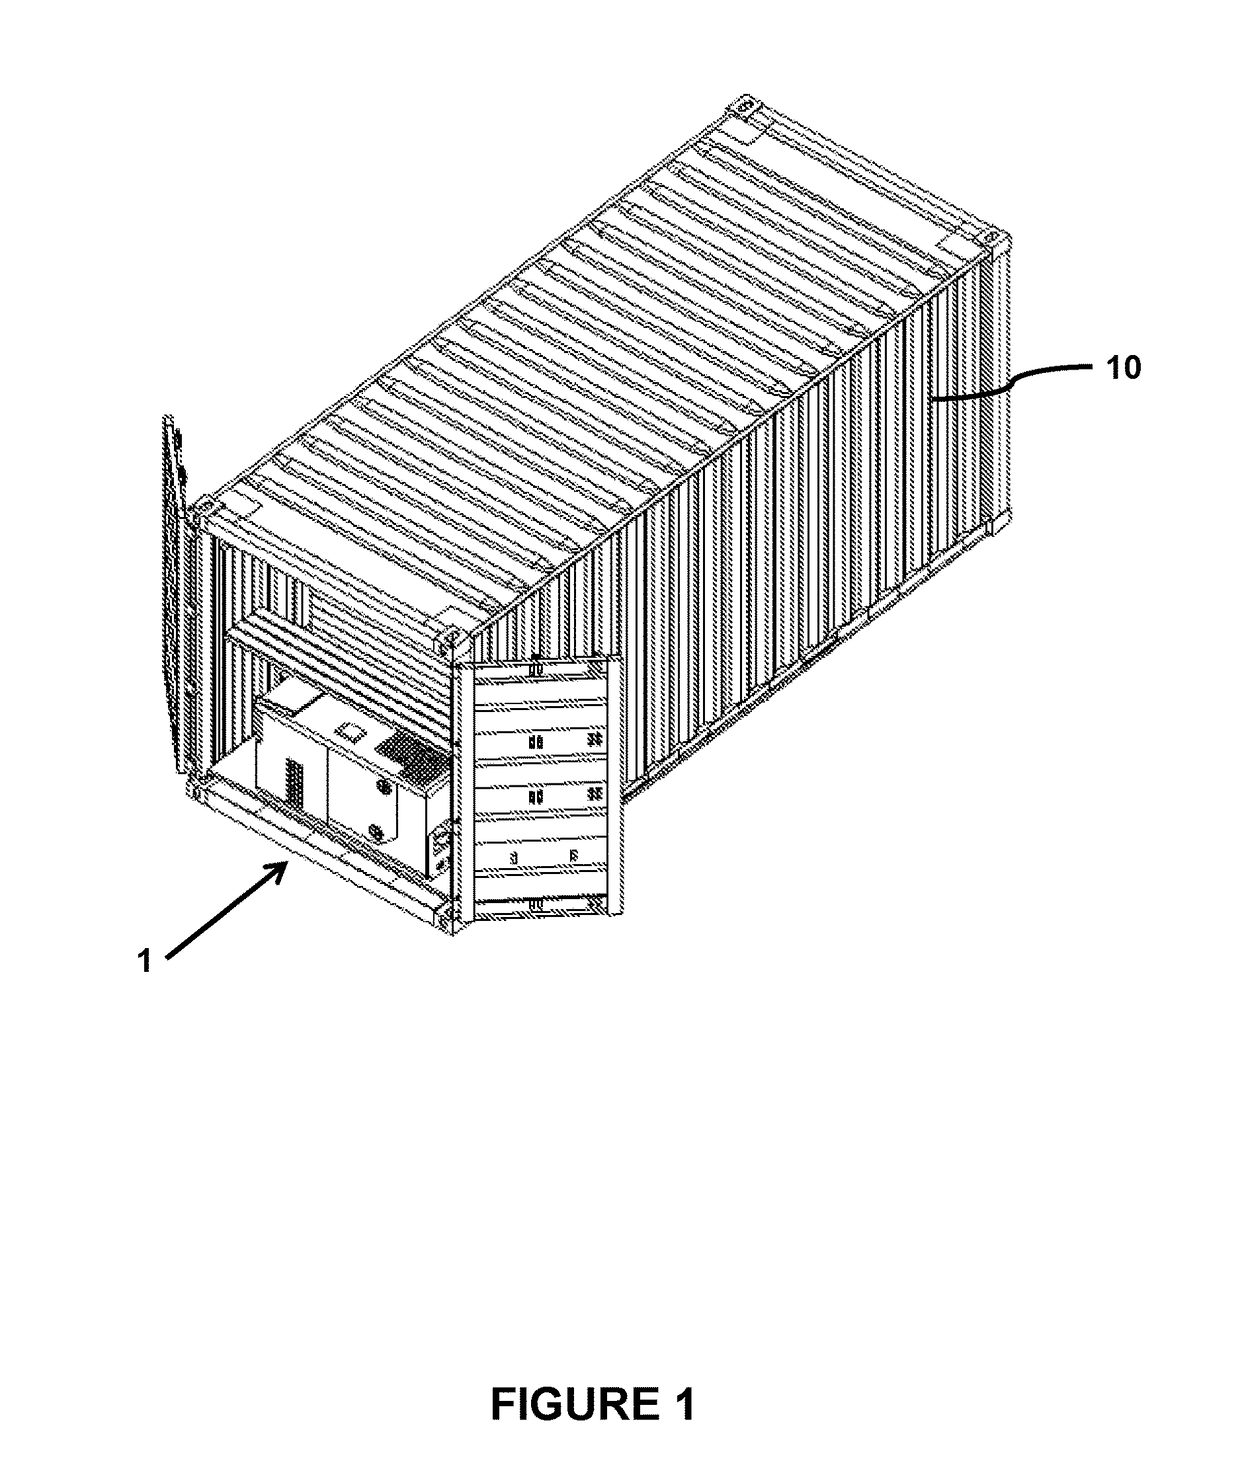 Portable modular shelter apparatus